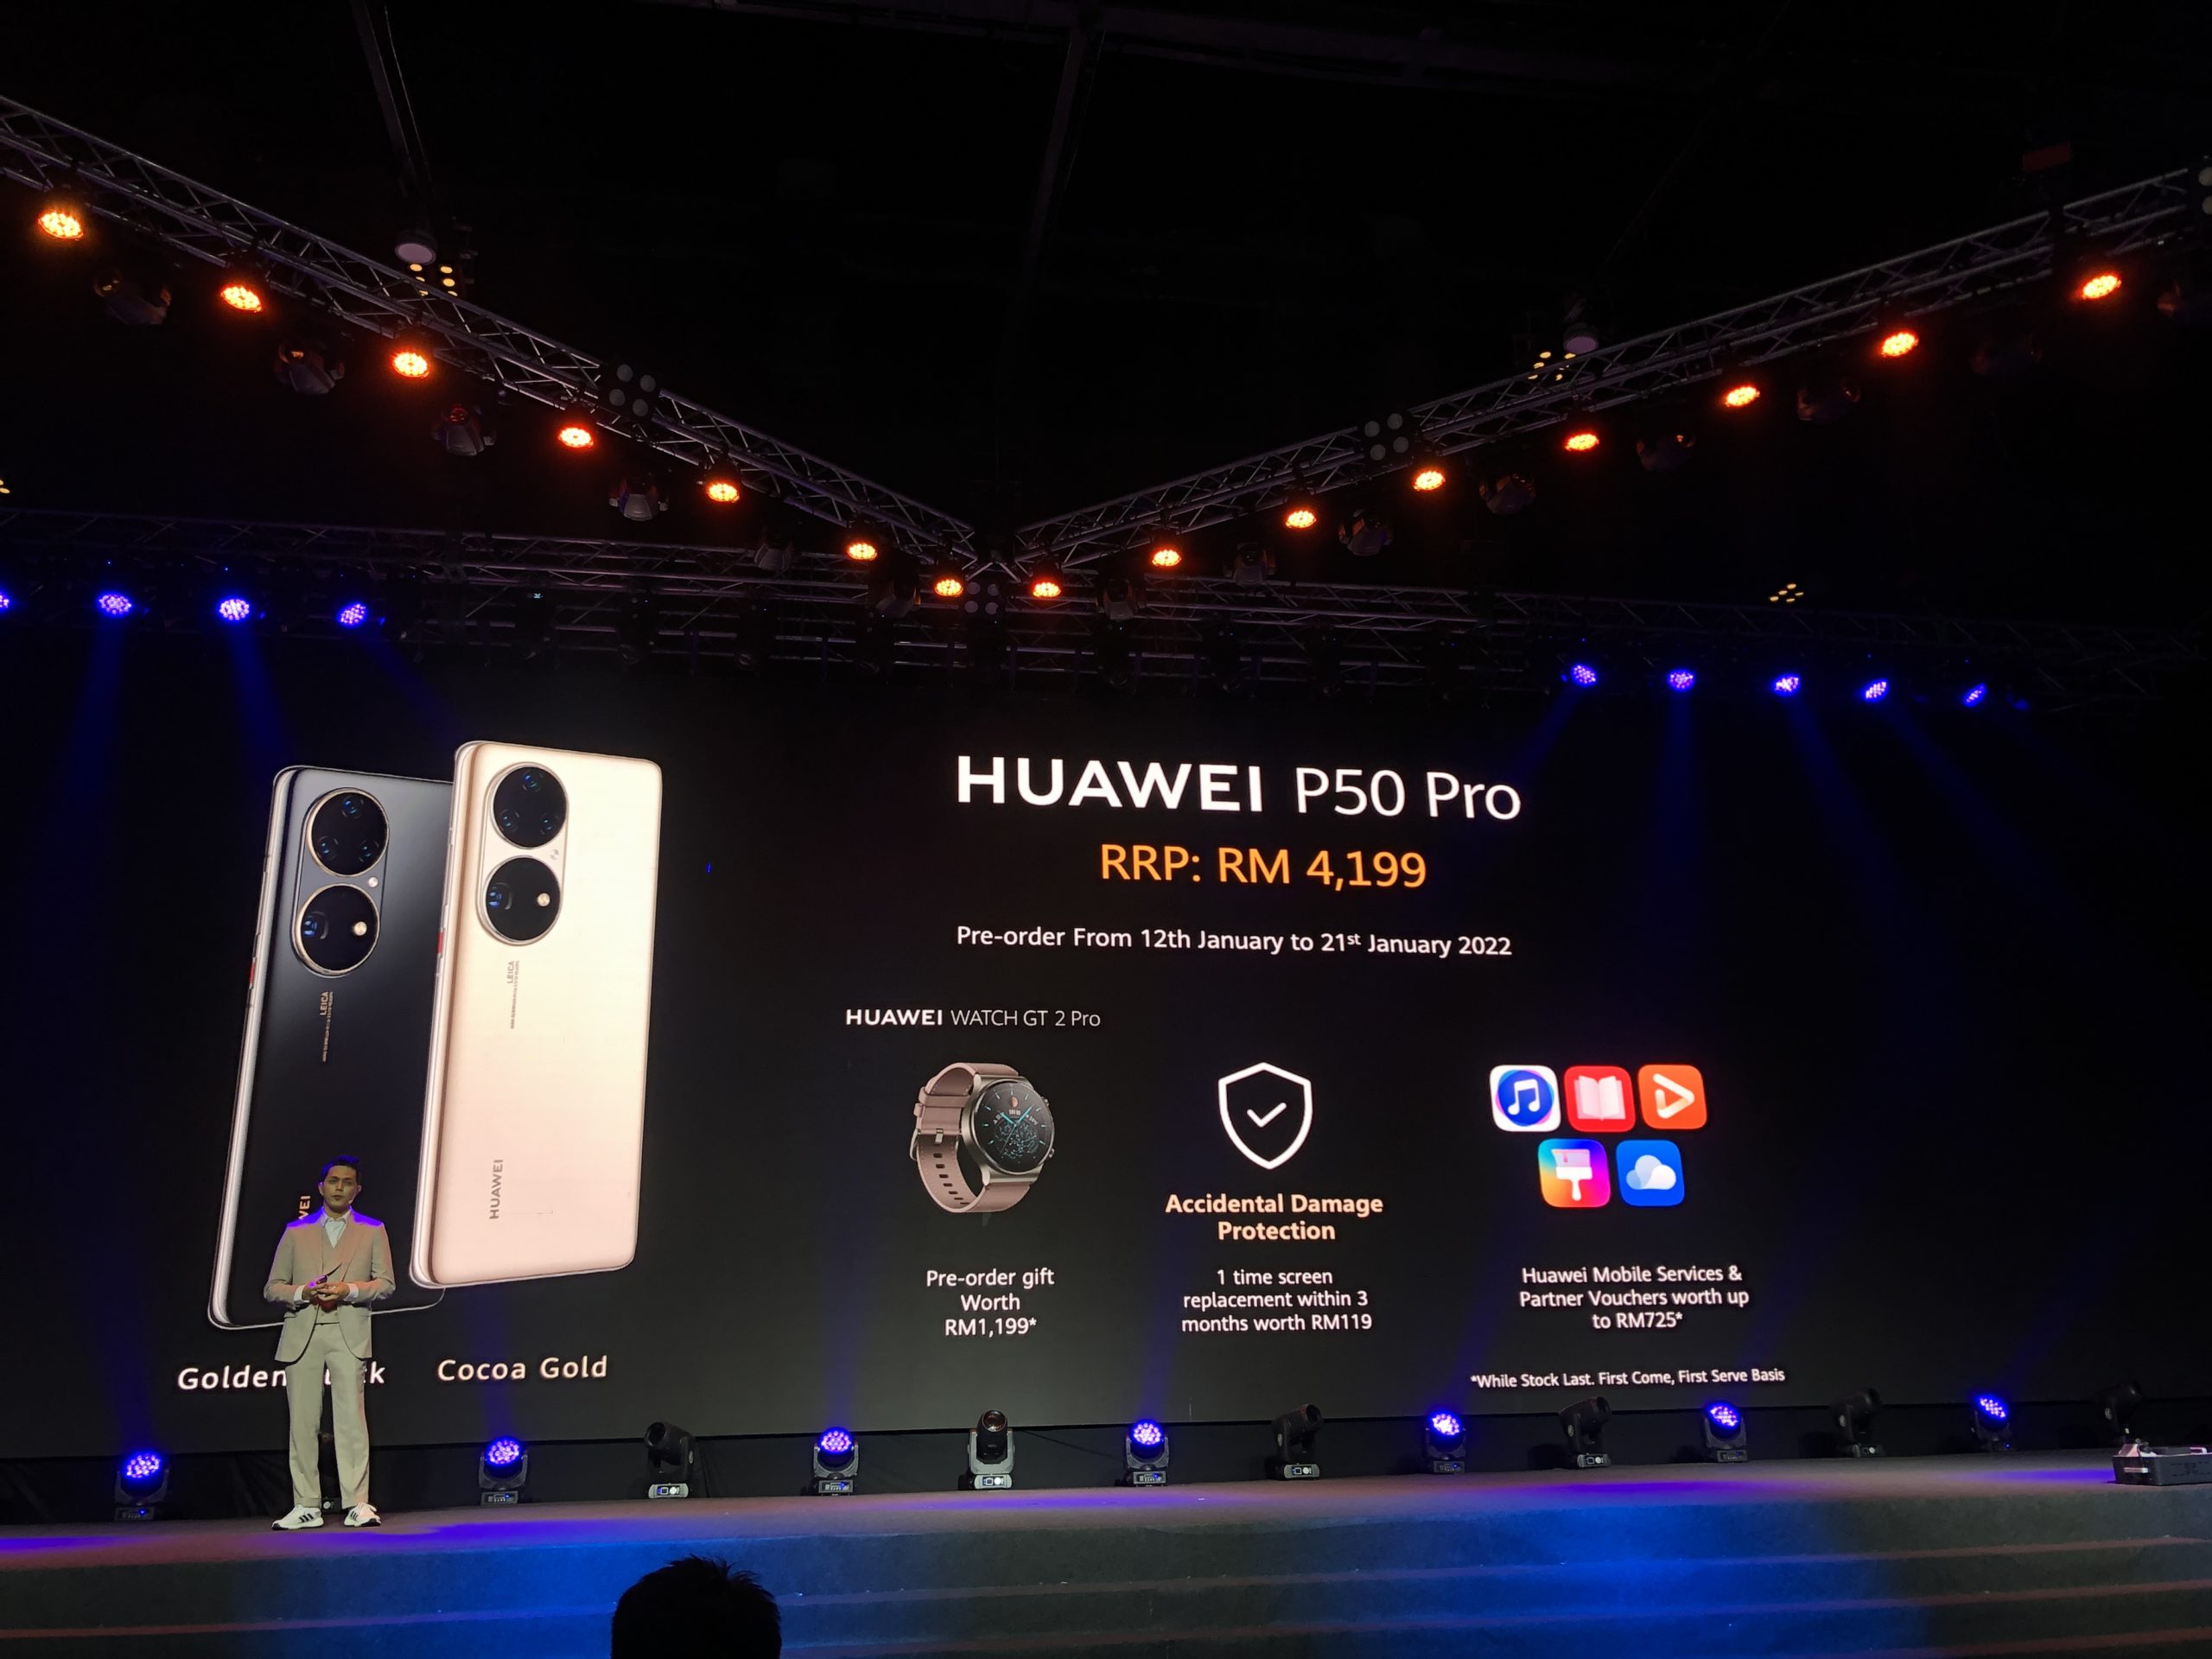 HUAWEI P50 Pro kini ditawarkan di Malaysia pada harga RM 4,199 23